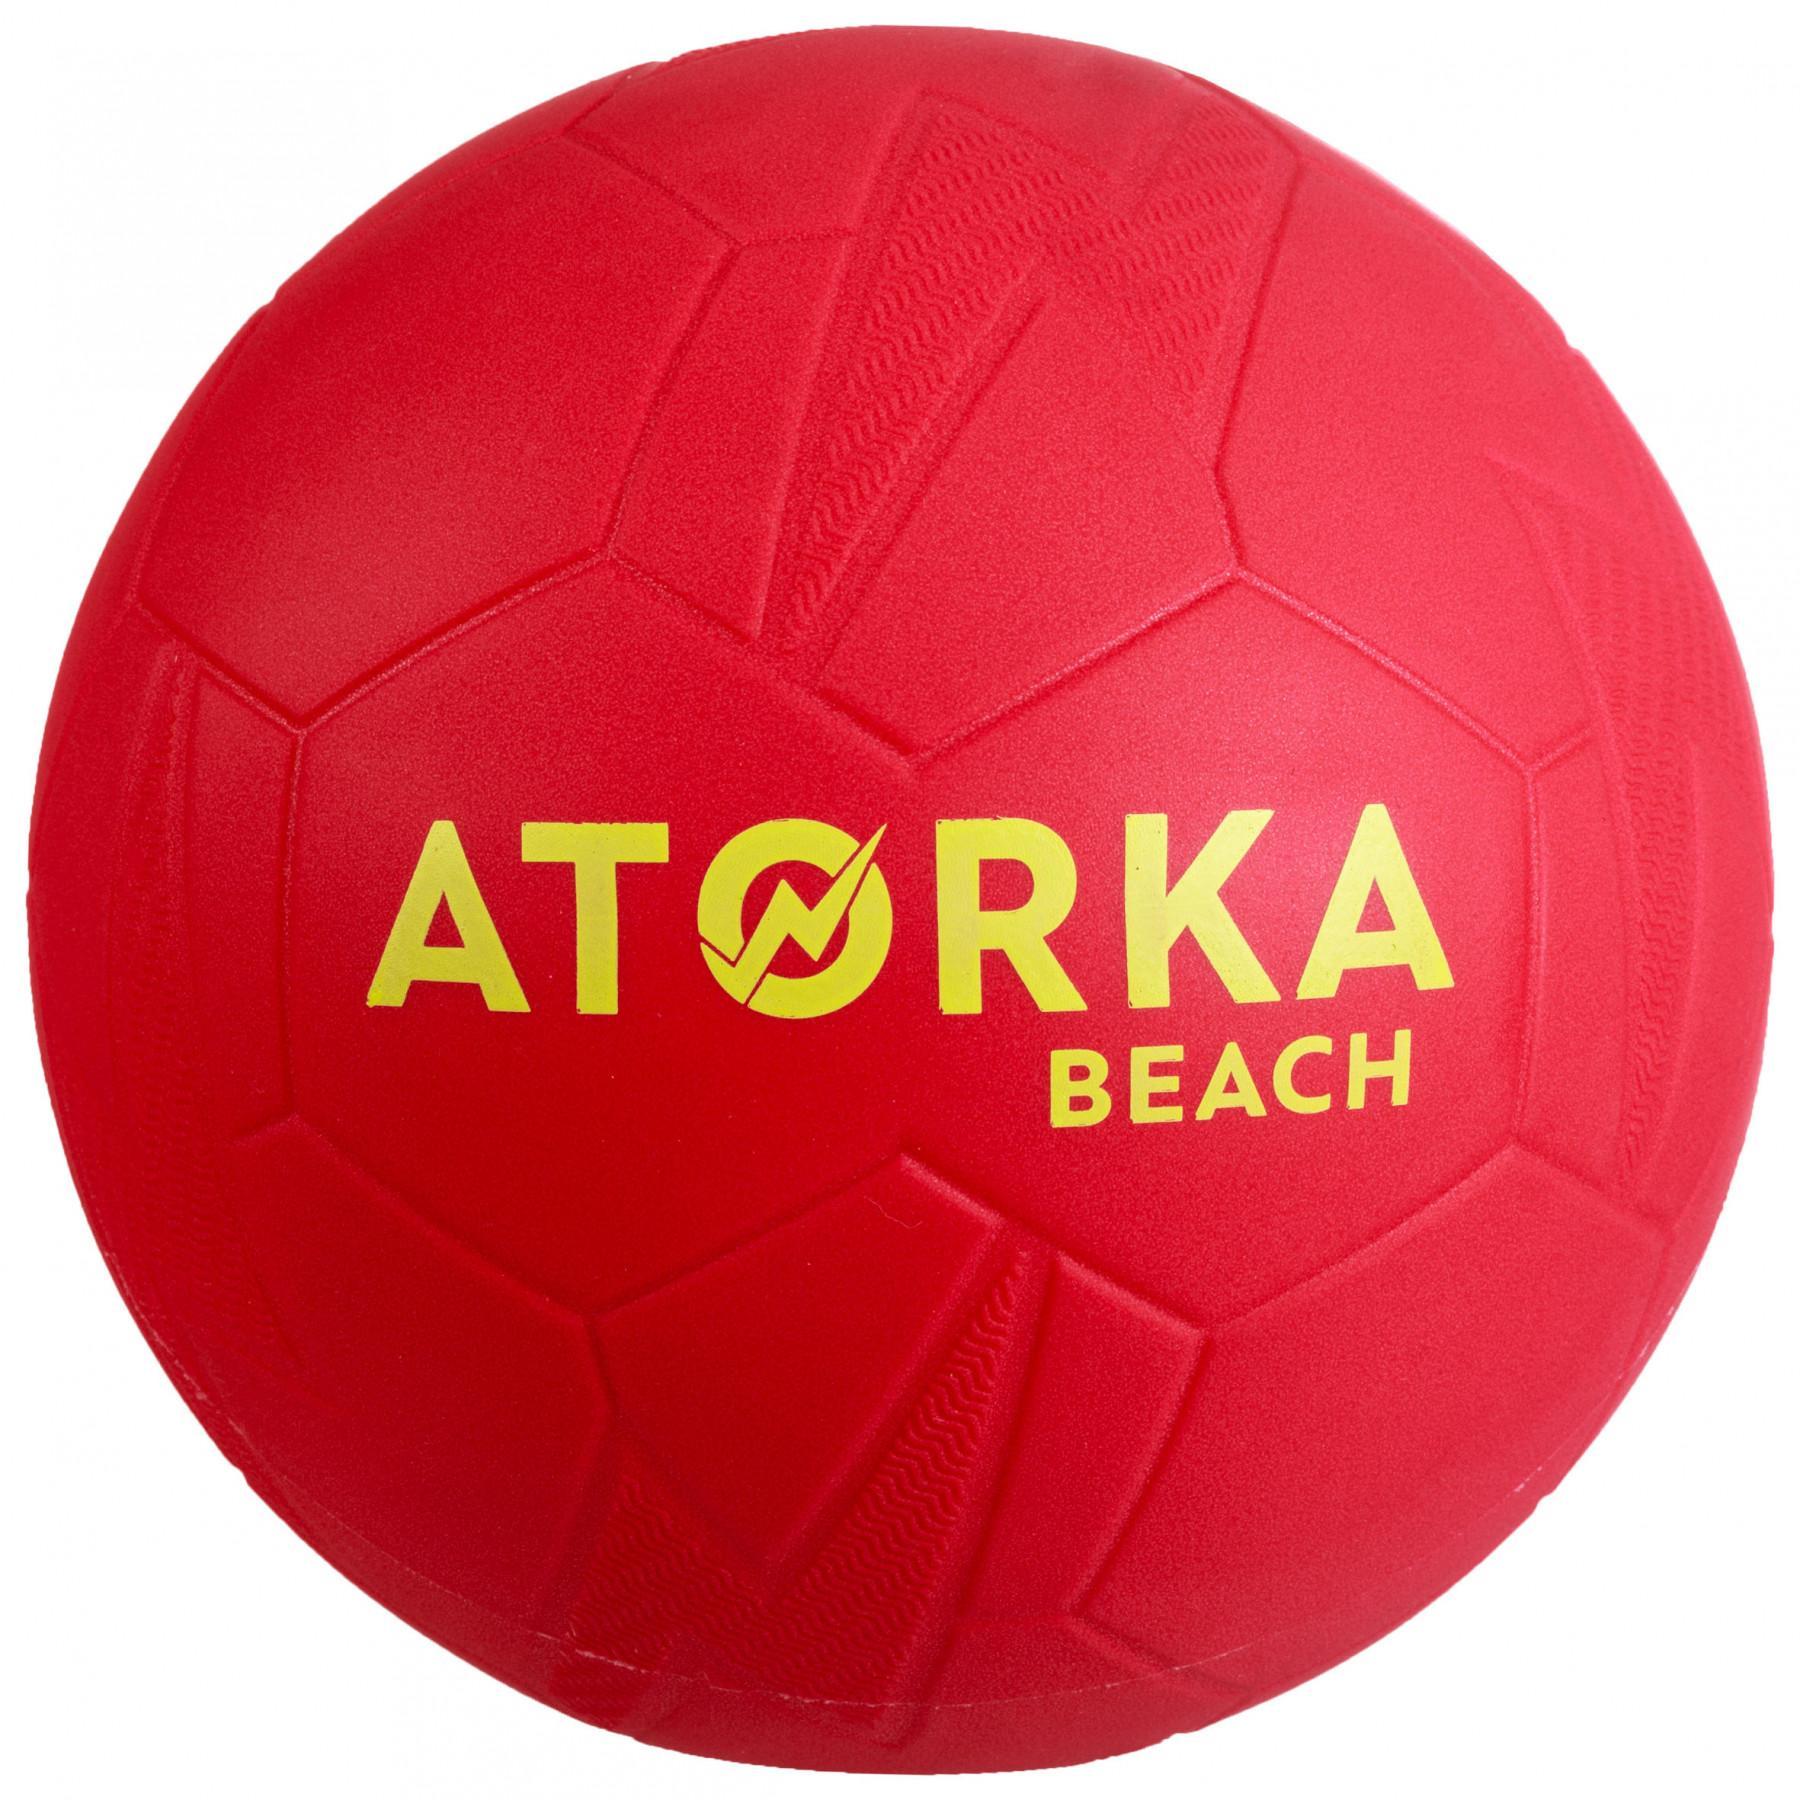 Set di 5 palloni da spiaggia Atorka HB500B